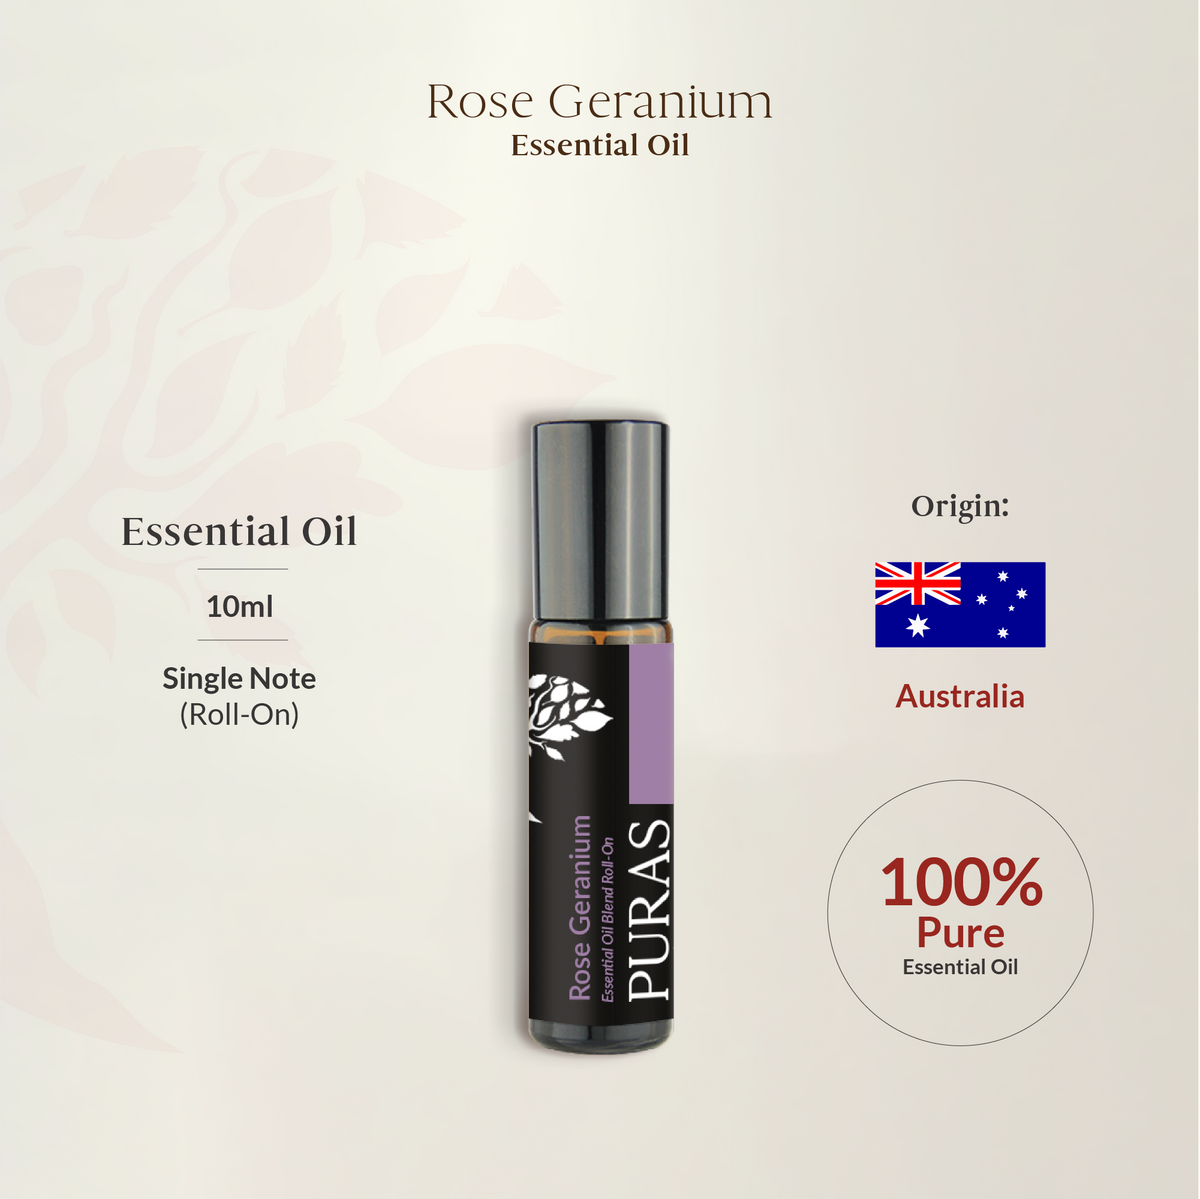 Rose Geranium Essential Oil (Roll-On) 10ml